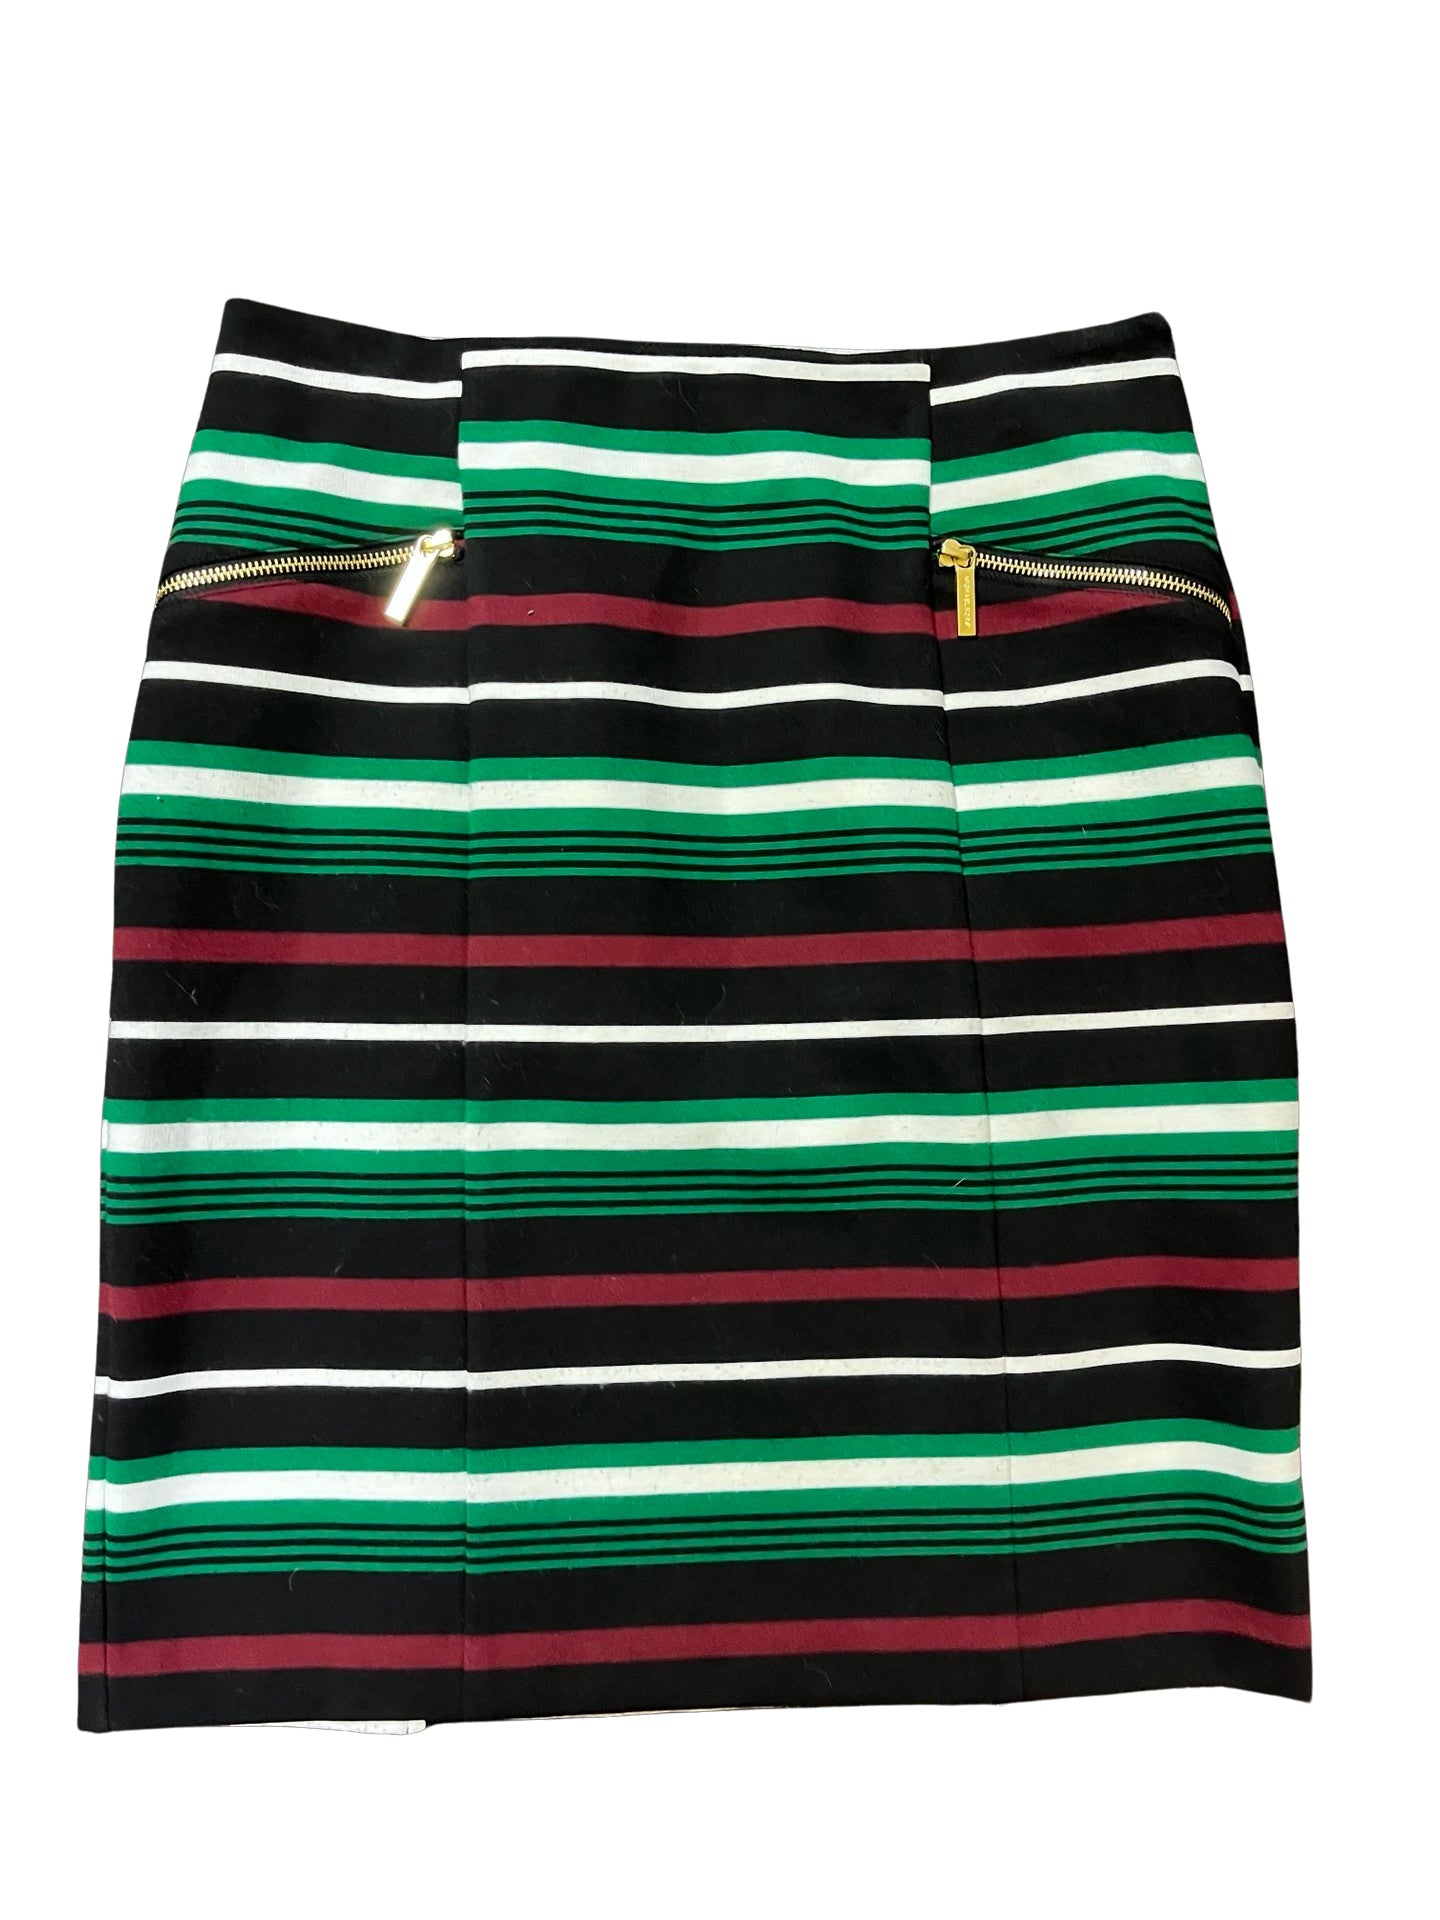 Size 10 Michael Kors Skirt